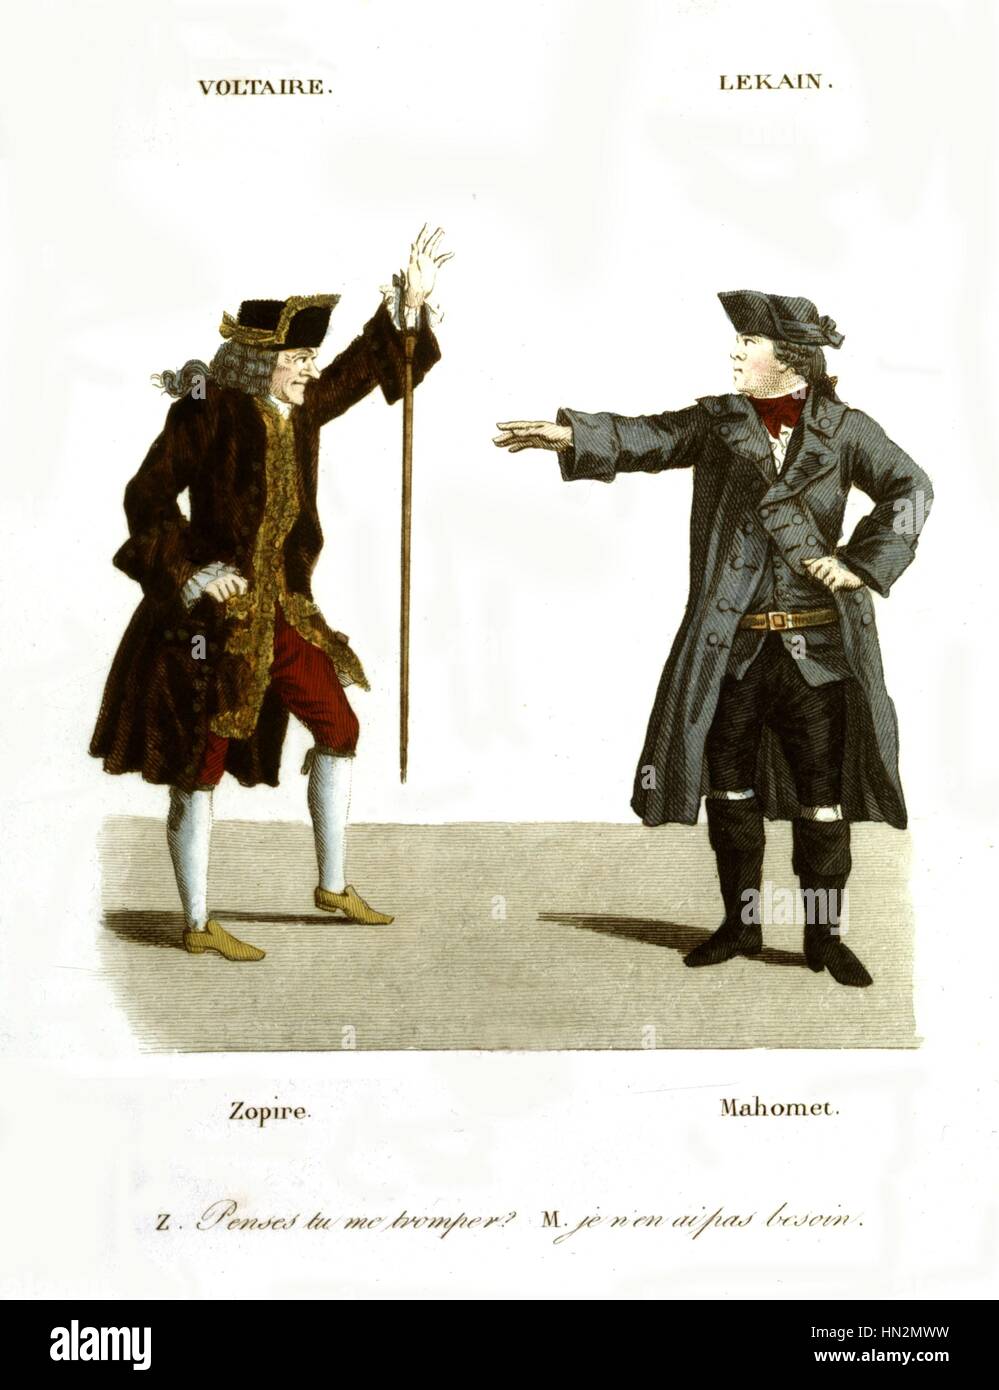 Farbige Gravur nach Foesch und Whirsker. Voltaire, spielt die Rolle des Zopir und Lekain spielt die Rolle des Muhammad 1820 in Paris. Bibliotheque nationale Stockfoto